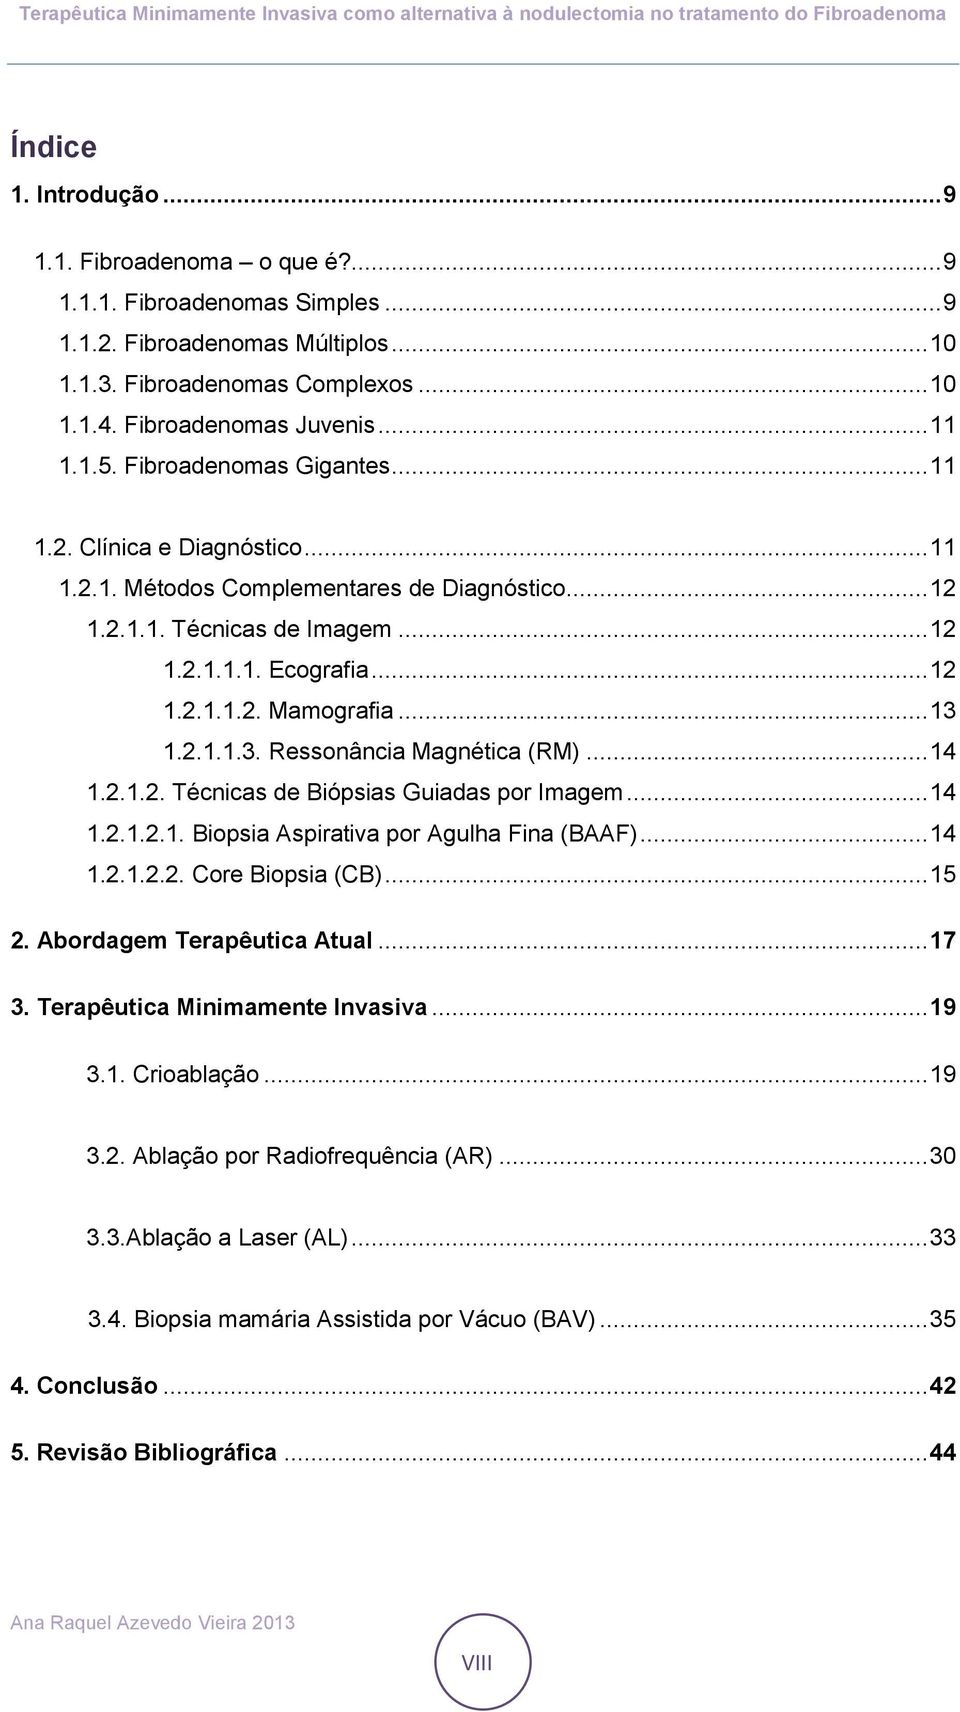 .. 13 1.2.1.1.3. Ressonância Magnética (RM)... 14 1.2.1.2. Técnicas de Biópsias Guiadas por Imagem... 14 1.2.1.2.1. Biopsia Aspirativa por Agulha Fina (BAAF)... 14 1.2.1.2.2. Core Biopsia (CB)... 15 2.